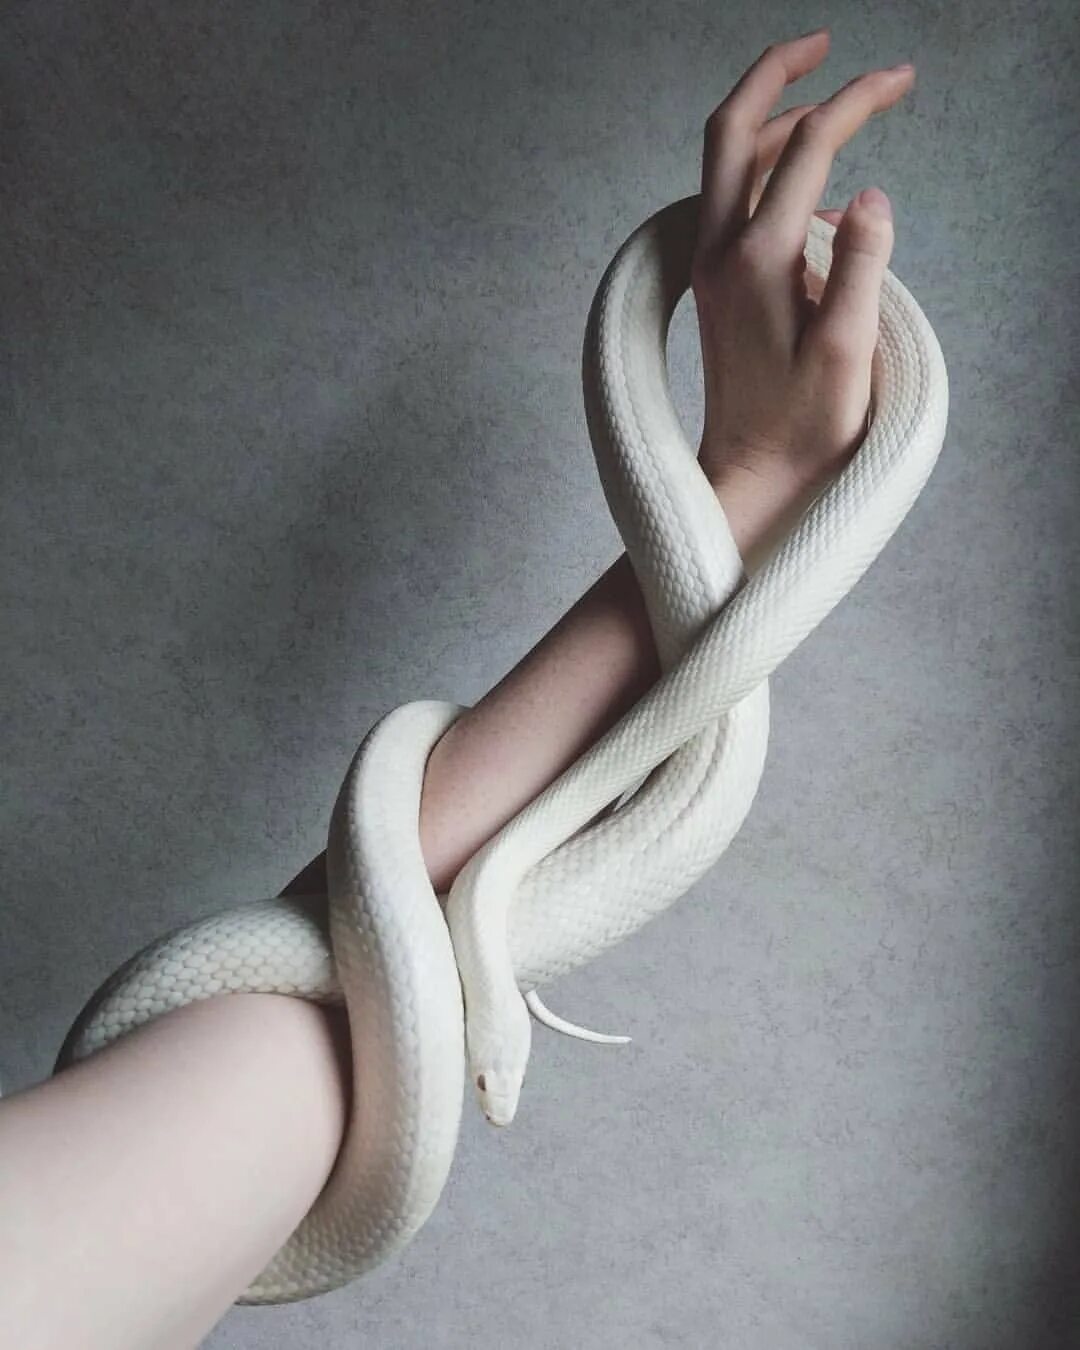 Змея Эстетика. Змея обвивает руку. Белая змея Эстетика. Красивые домашние змеи.